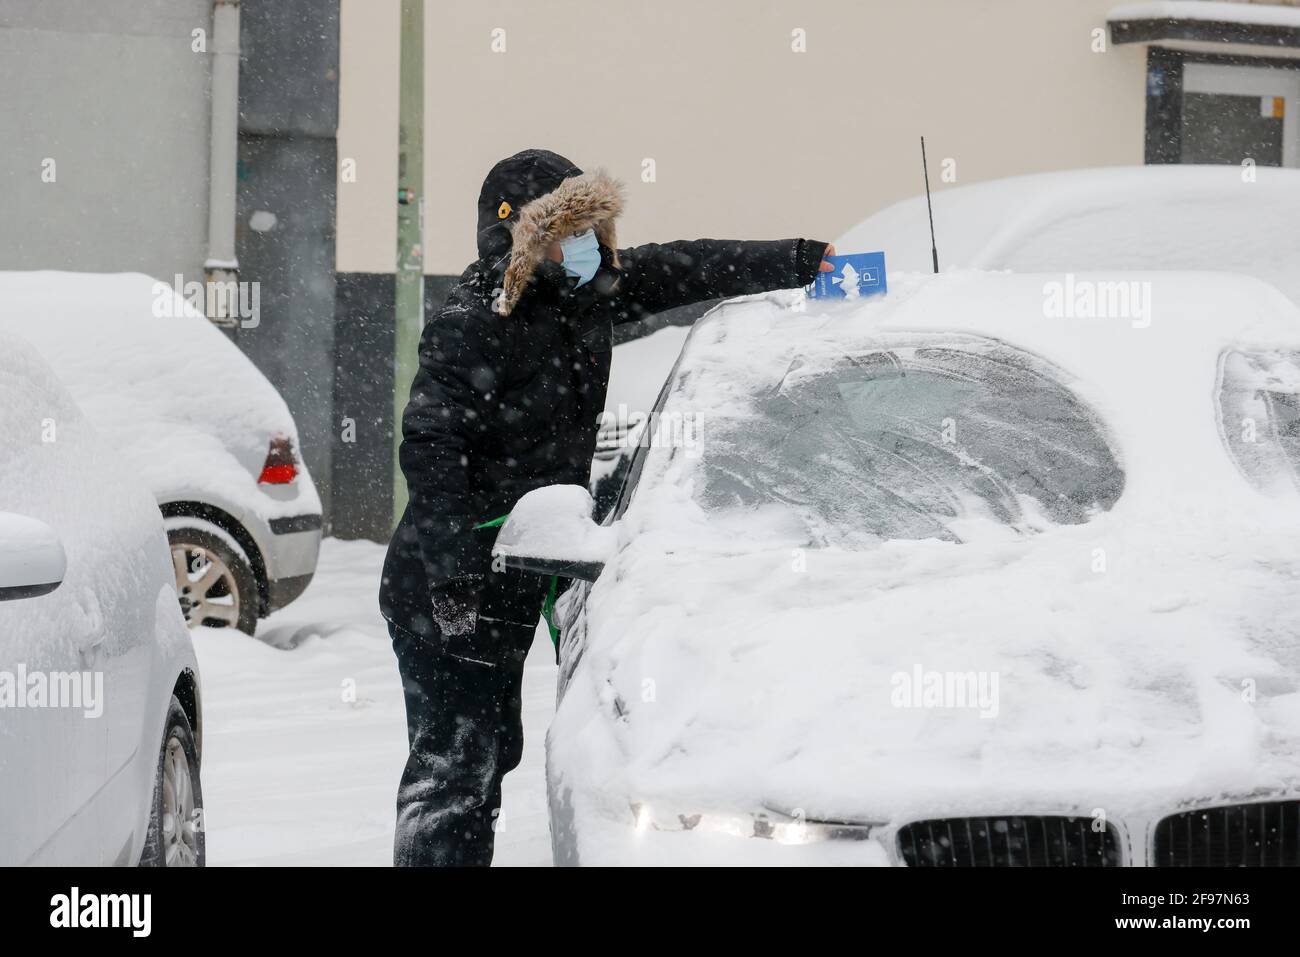 Essen, Rhénanie-du-Nord-Westphalie, Allemagne - début de l'hiver dans la région de la Ruhr, conducteur avec masque égratignures neige et glace de la voiture avec disque de stationnement en temps de la corona pandémie. Banque D'Images